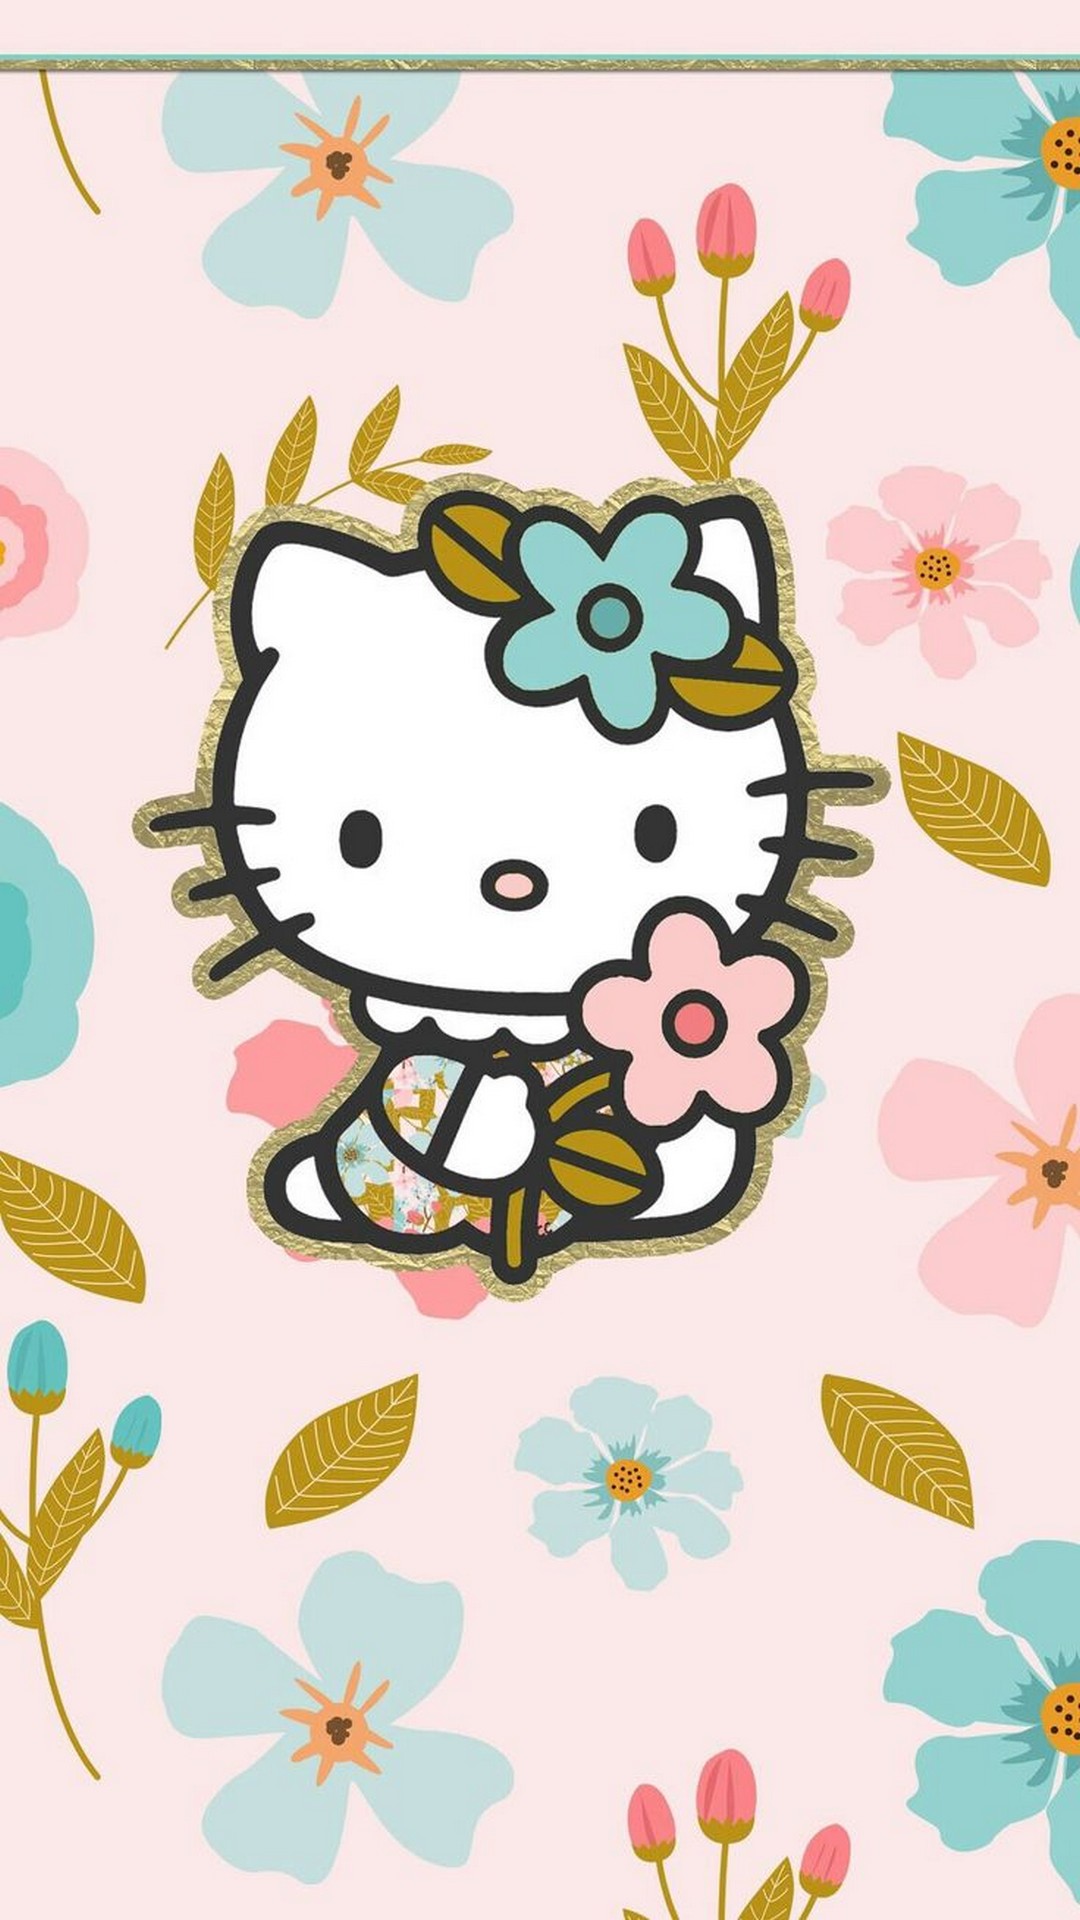 Hình ảnh Hello Kitty cute dễ thương và đẹp nhất dành cho các bạn gái   Trung Tâm Đào Tạo Việt Á